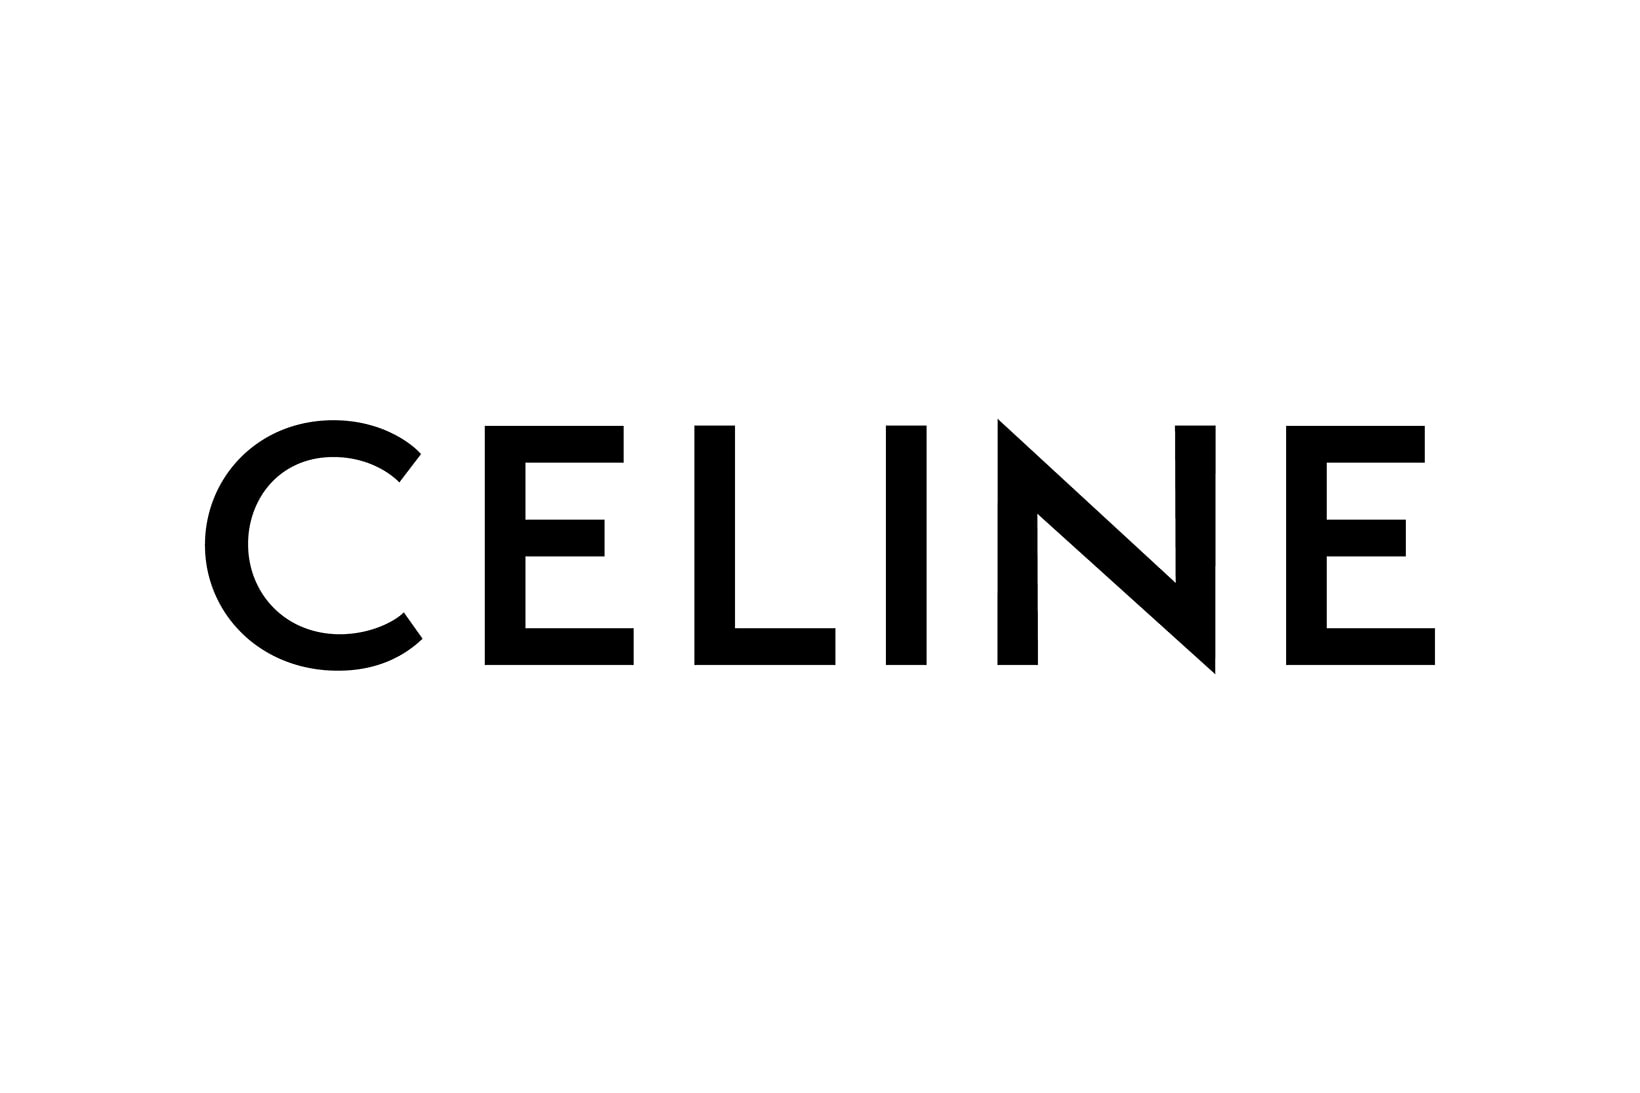 Hedi Slimane Celine New Logo Instagram Artistic Creative Image Director